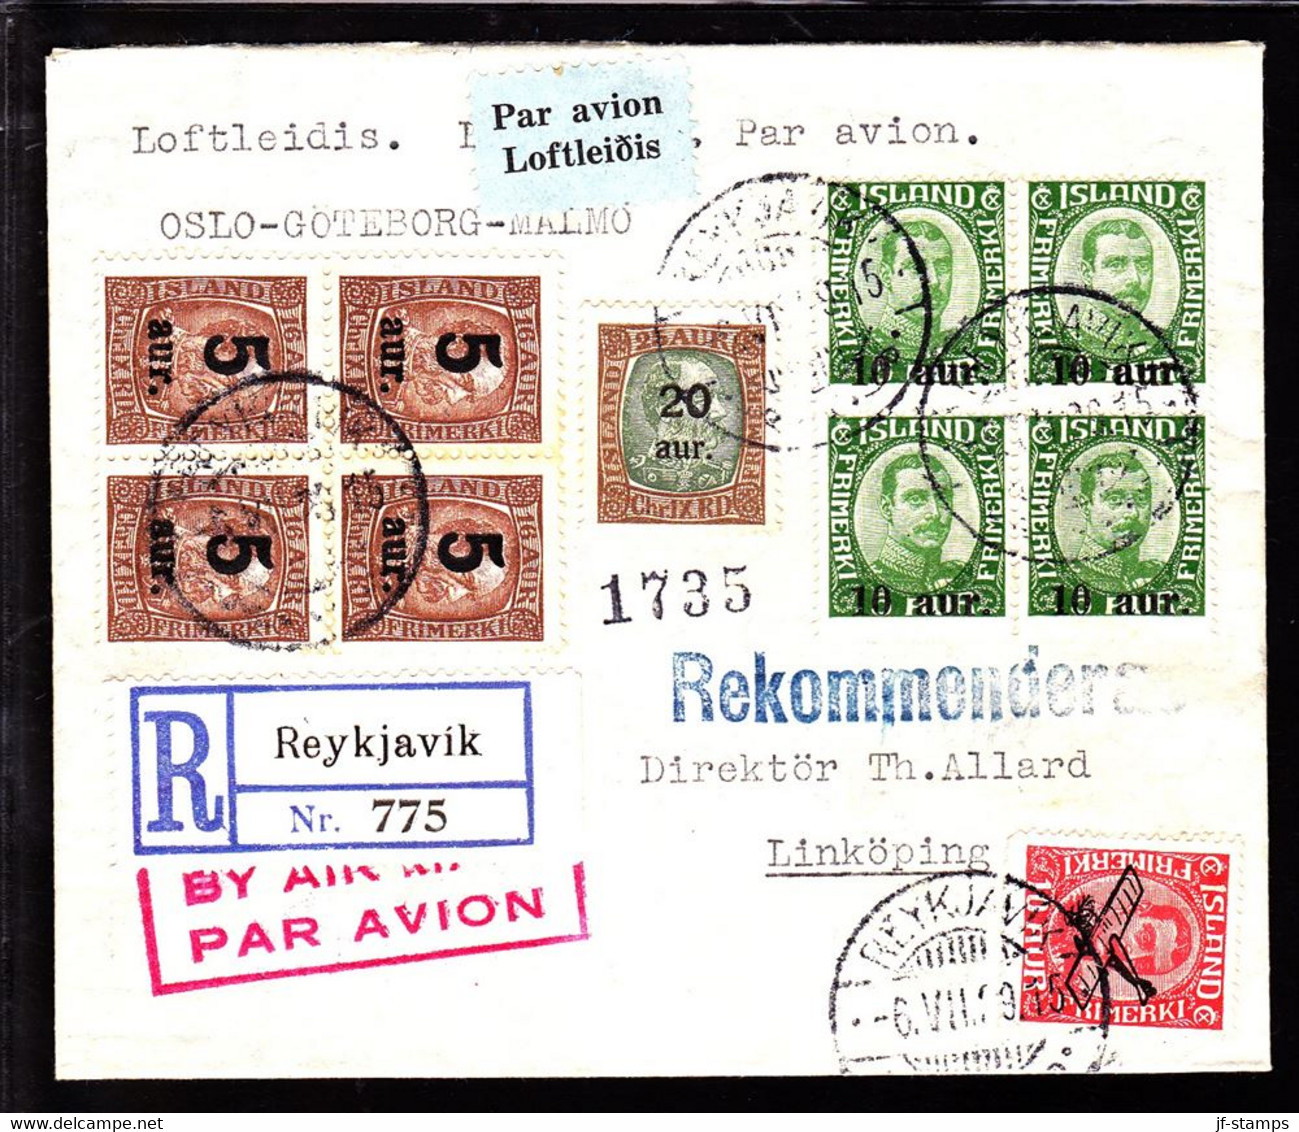 1929. Air Mail. 4-Bloc10 Aur On 5 Aur Green Chr. X, Air Mail 10 Aur 20 Aur/25 Aur + 4-Bloc 5... (Michel 110+) - JF103812 - Covers & Documents